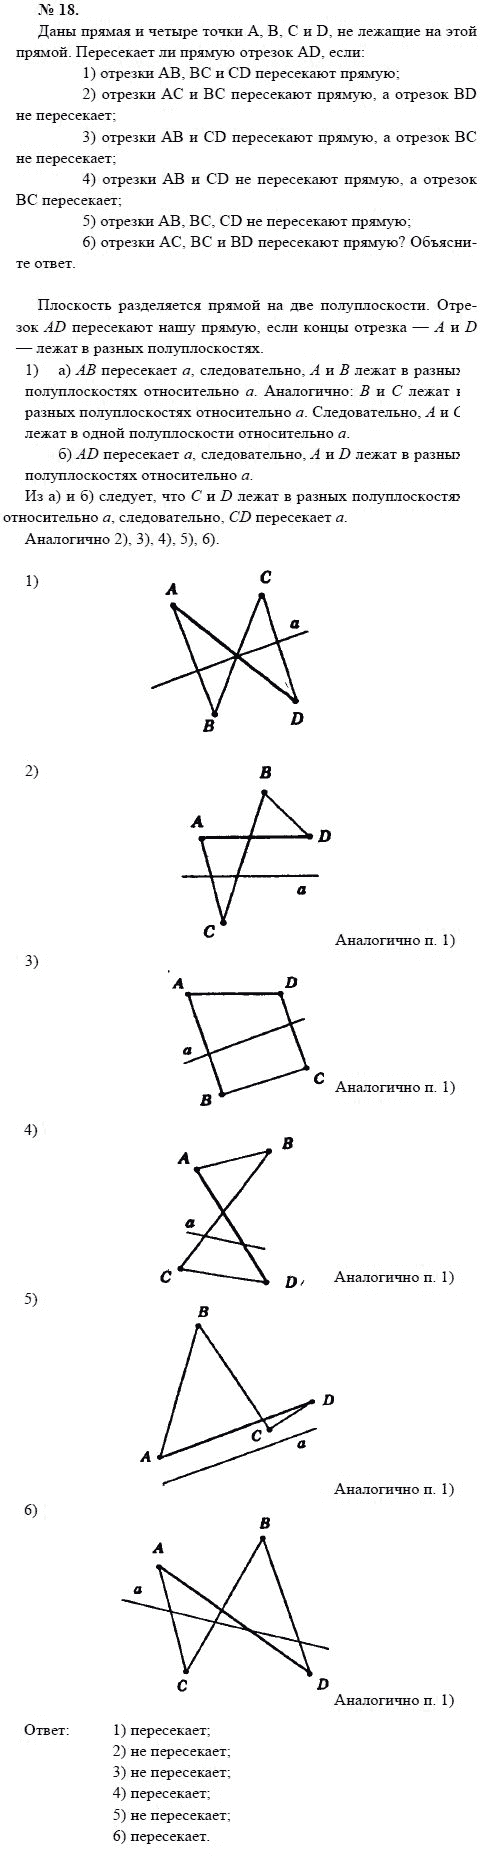 Страница (упражнение) 18 учебника. Ответ на вопрос упражнения 18 ГДЗ решебник по геометрии 7-9 класс с полным решением Погорелов